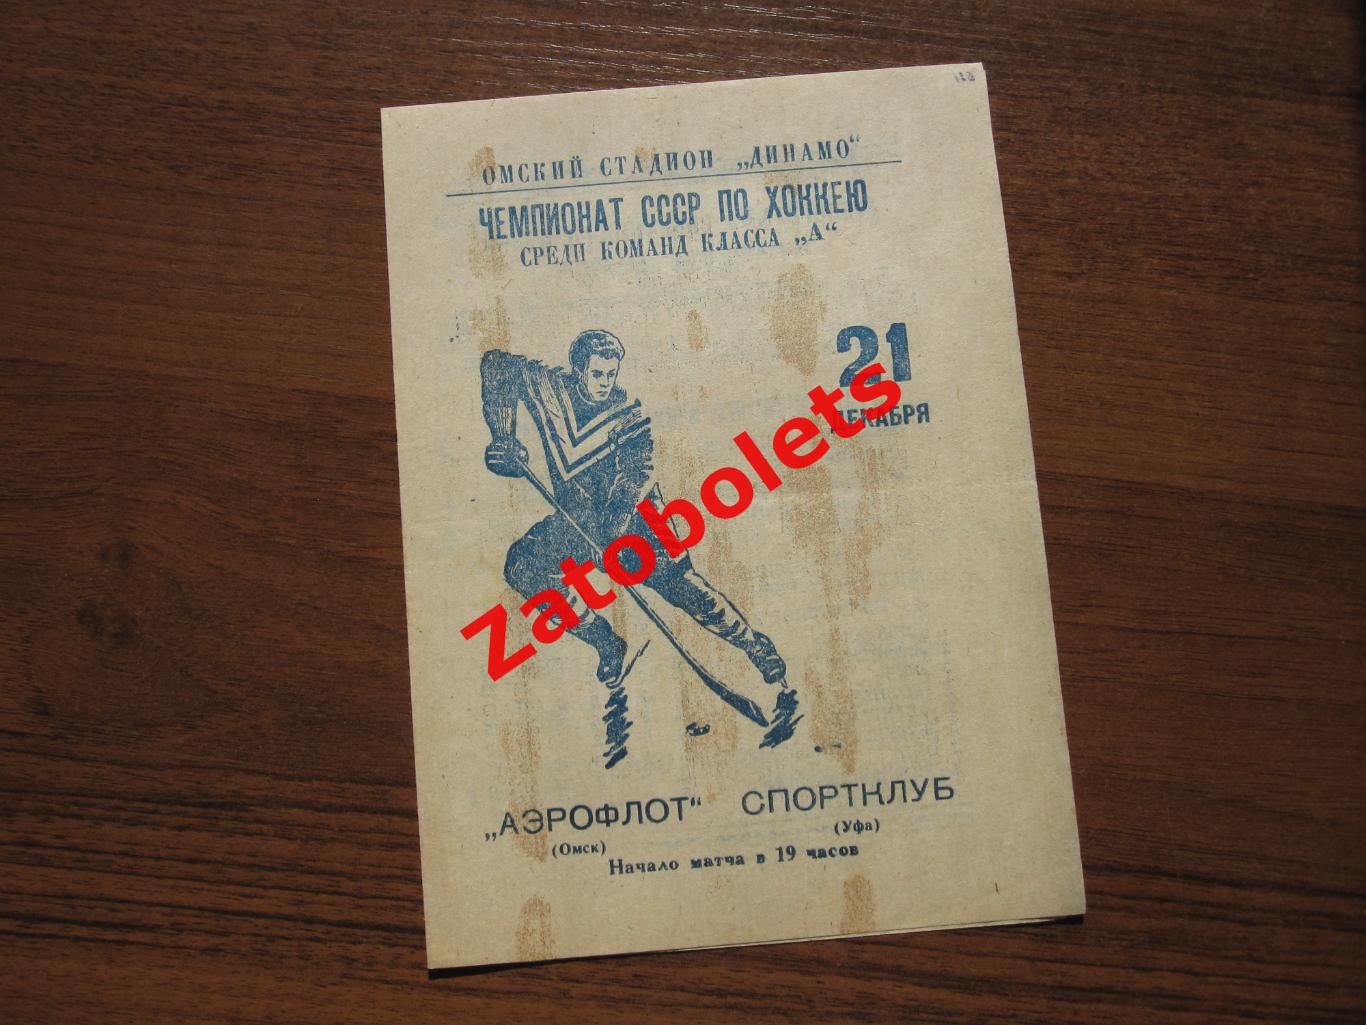 Аэрофлот Омск - Спортклуб Уфа 21.12.1965